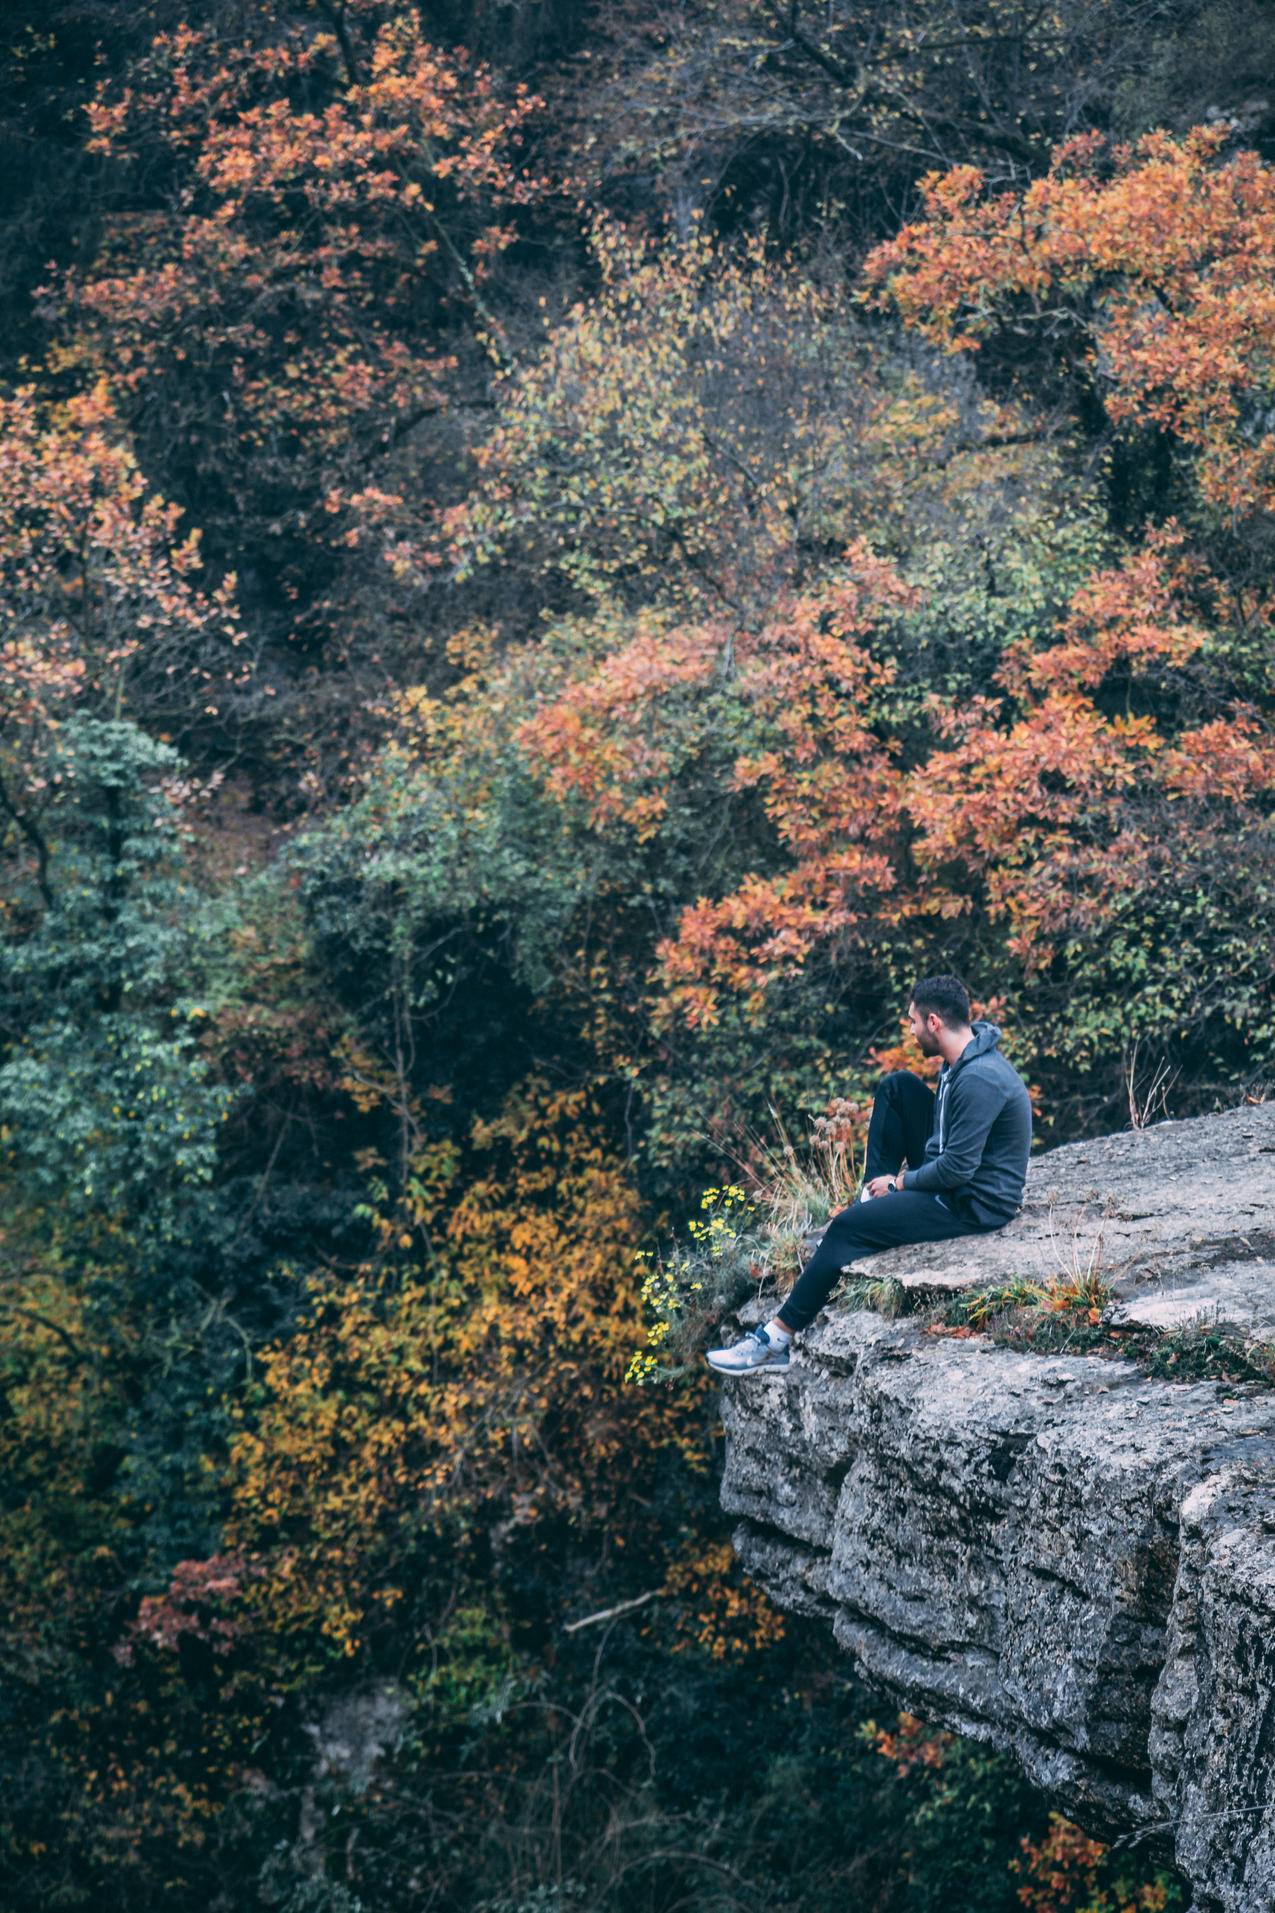 身穿黑色裤兜的人穿着黑色裤子坐在绿叶红树林上的石崖上